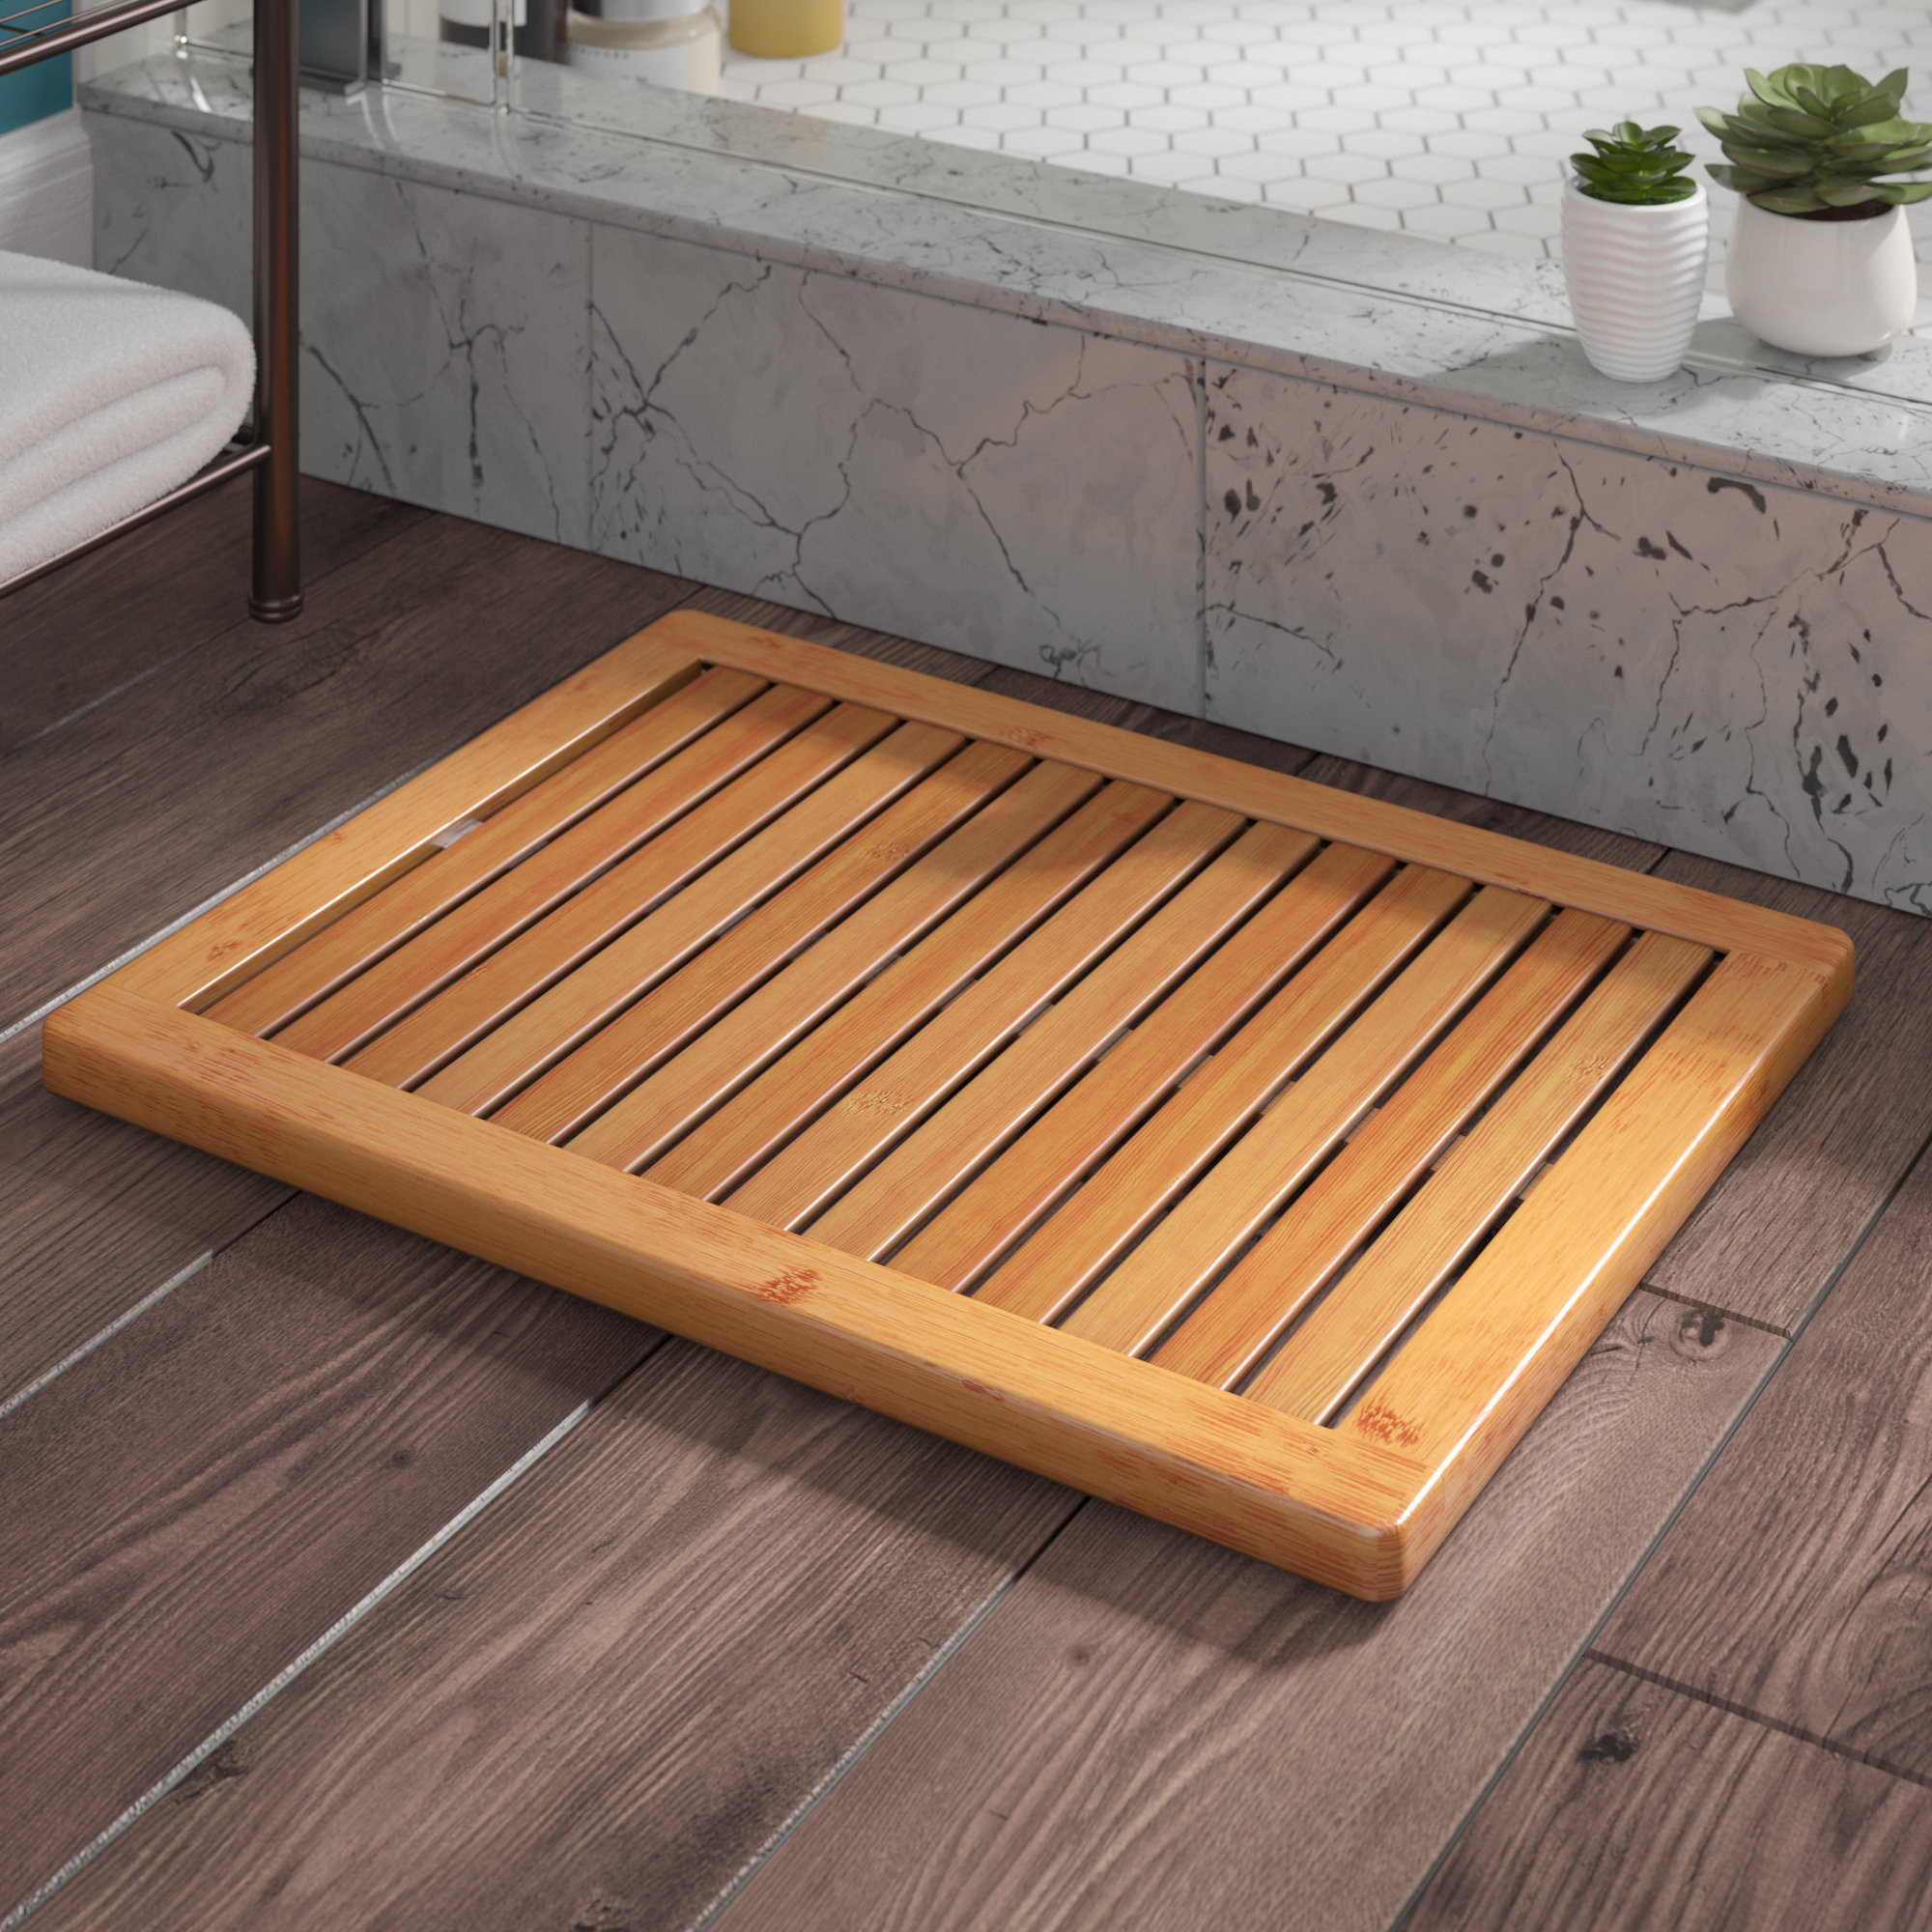 bamboo Kitchen Bath Bathroom Shower Floor Home Door Mat Rug Non-Slip new 